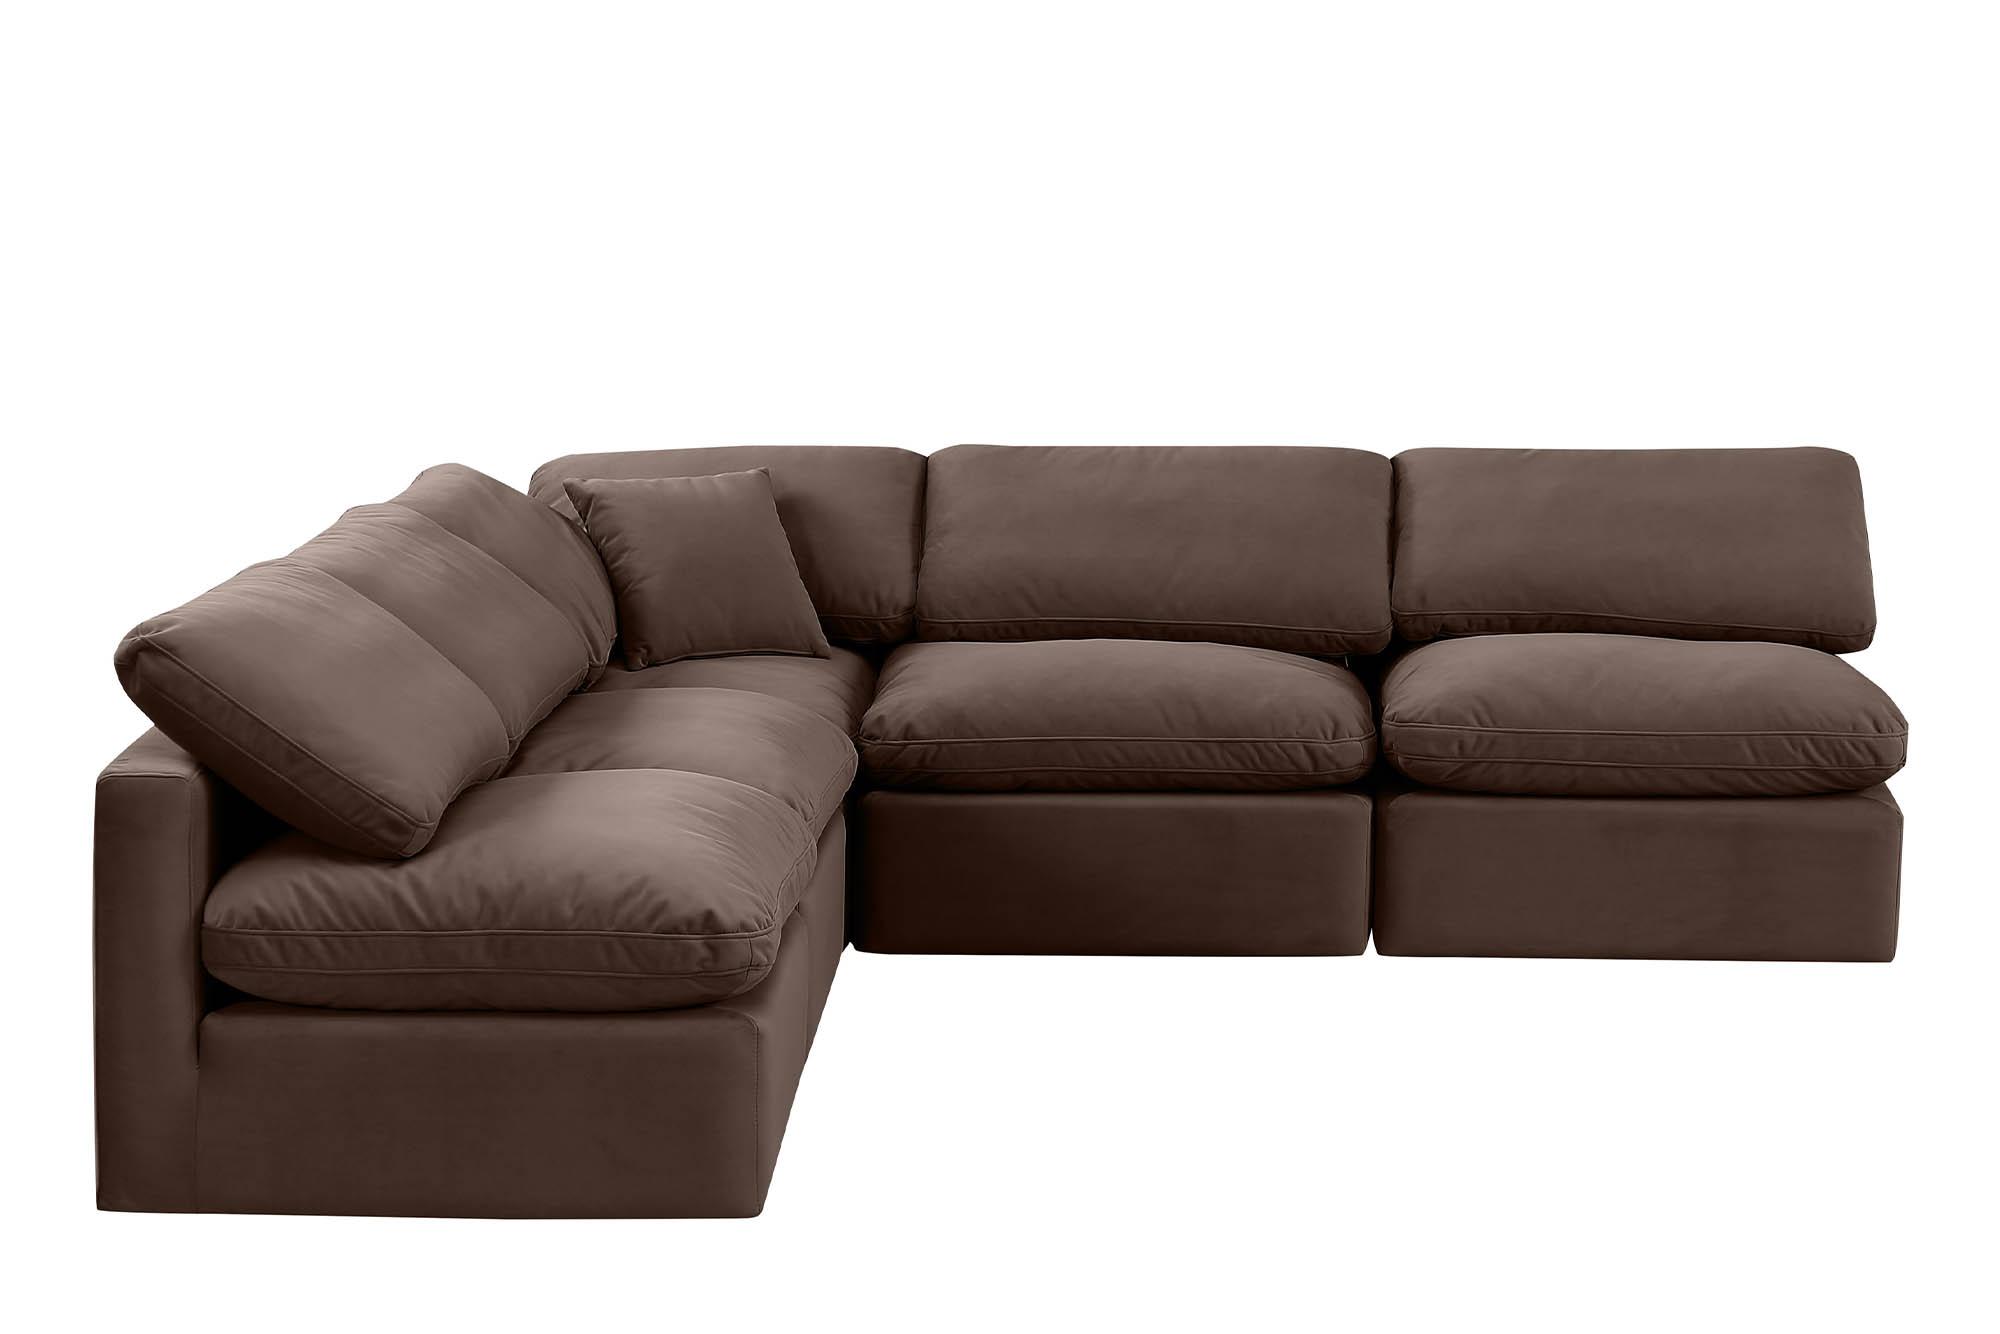 

    
Meridian Furniture INDULGE 147Brown-Sec5B Modular Sectional Sofa Brown 147Brown-Sec5B
